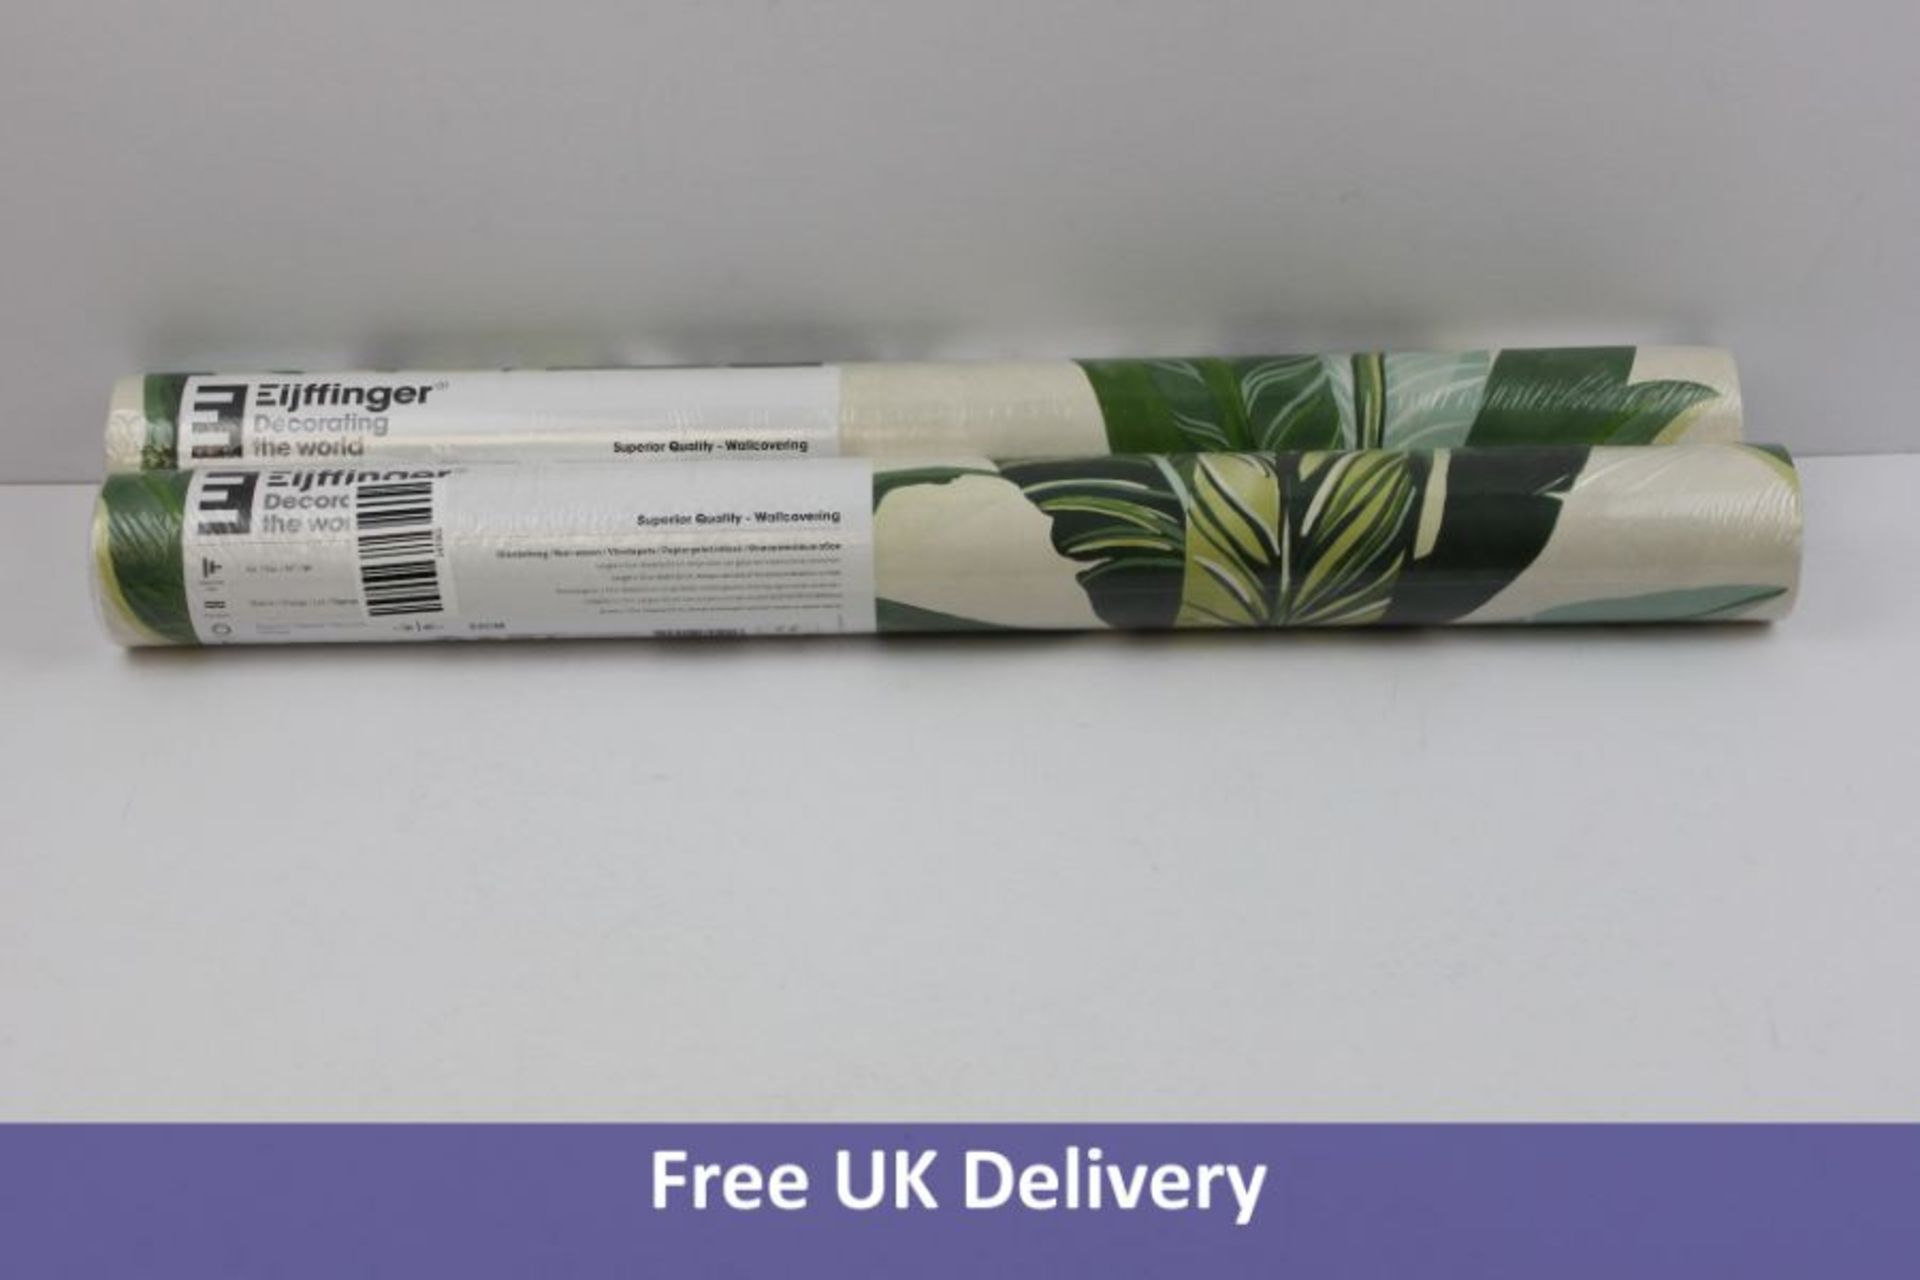 Two rolls of Eijffinger Vivid Banana Leaves Wallpaper, Green and White. 384500